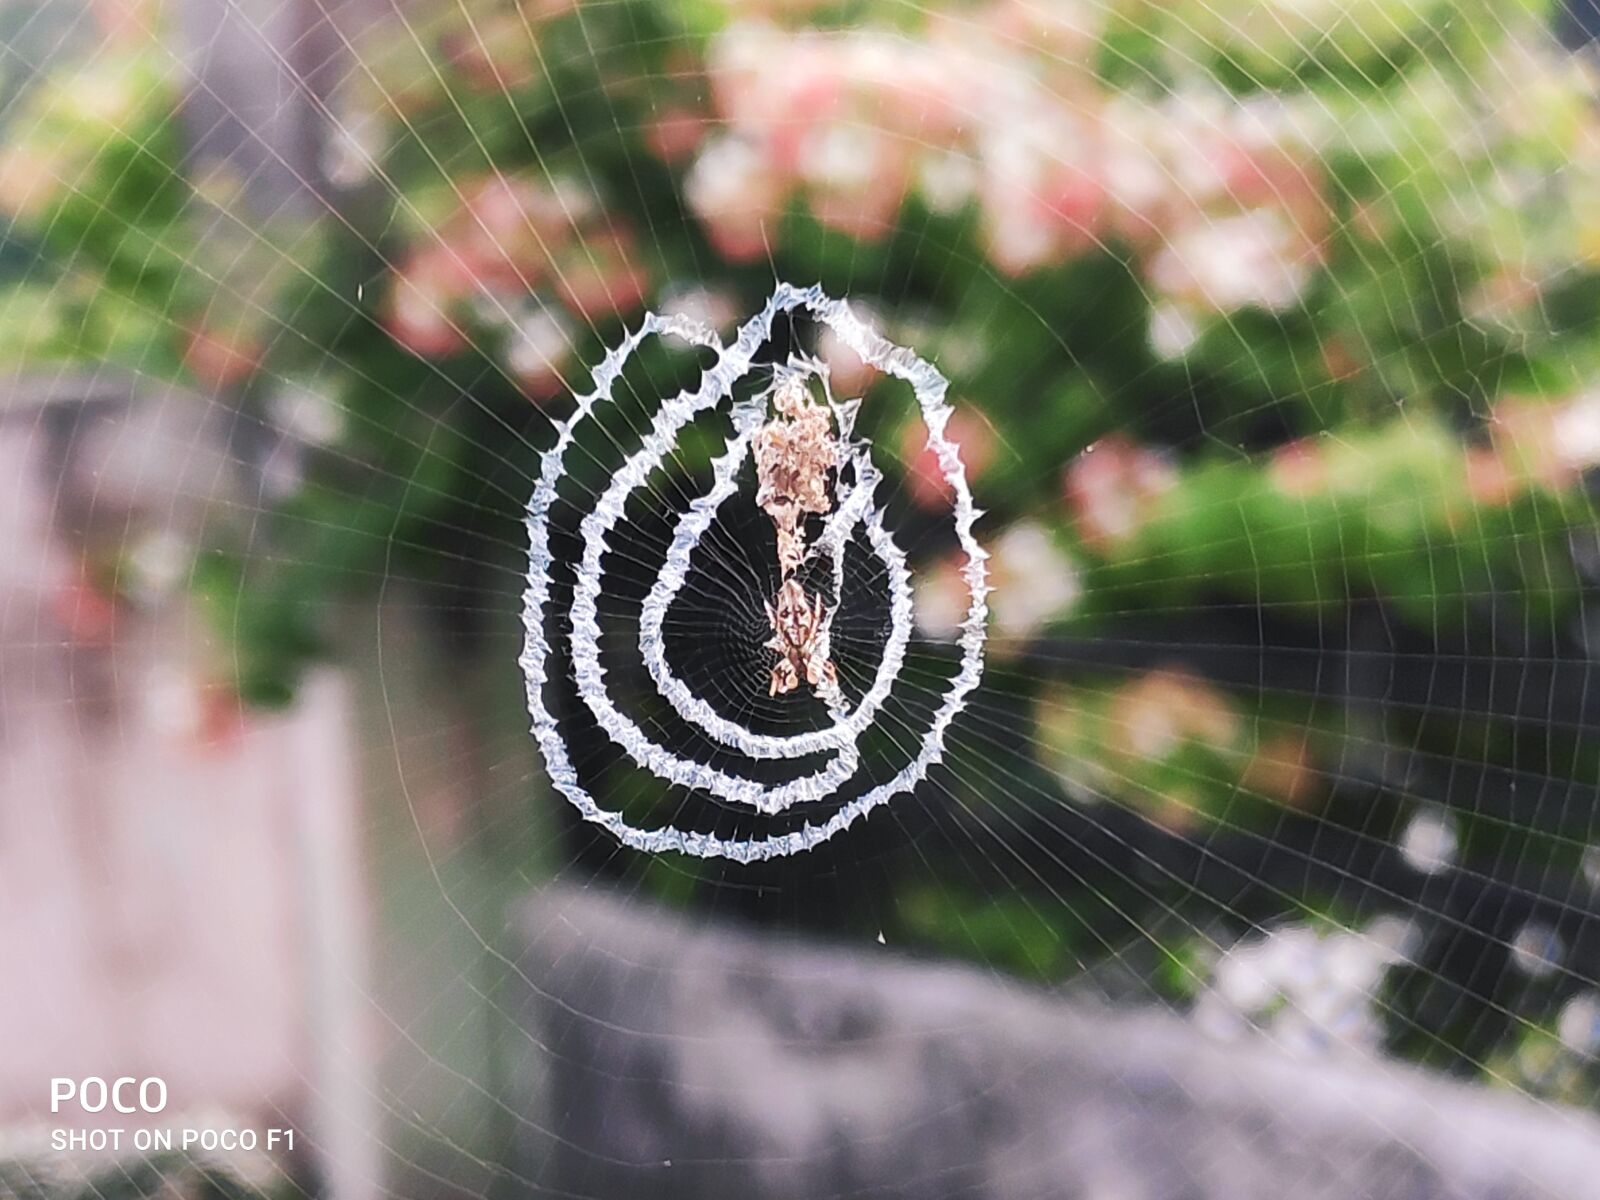 Xiaomi POCO F1 sample photo. Spider, net, spider net photography